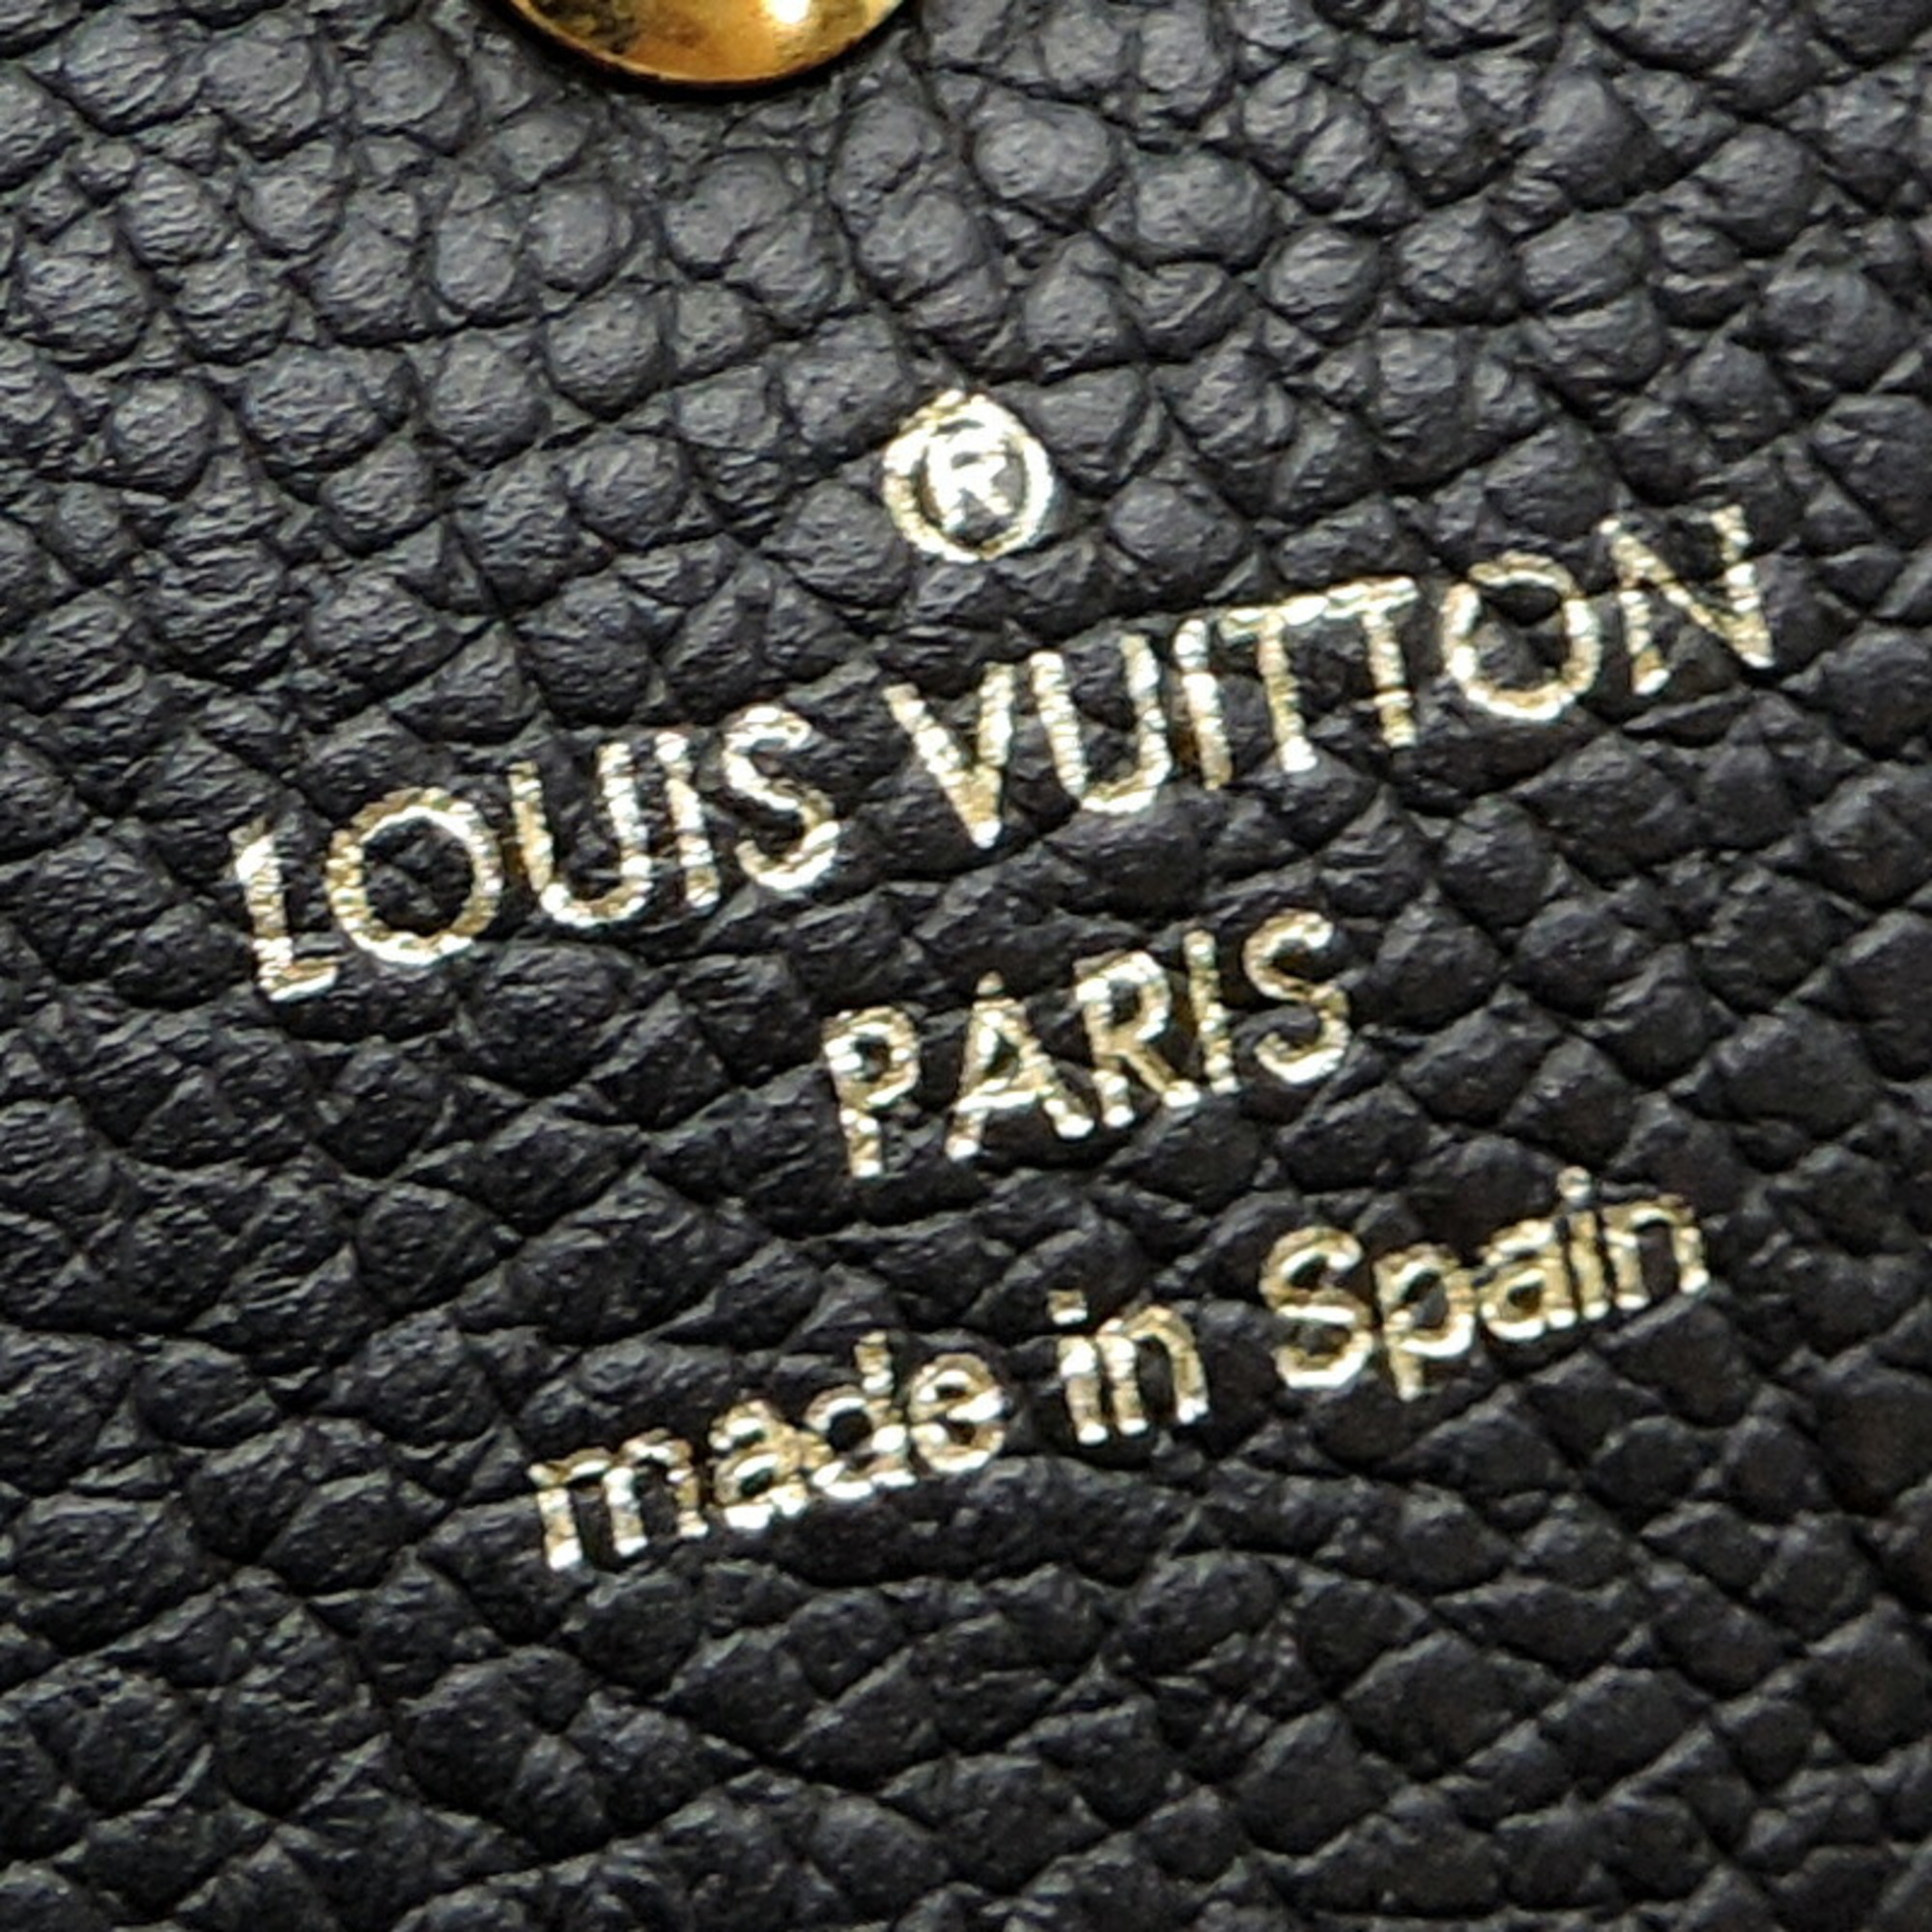 Louis Vuitton Portefeuille Sarah Women's Long Wallet M61182 Monogram Empreinte Noir (Black)